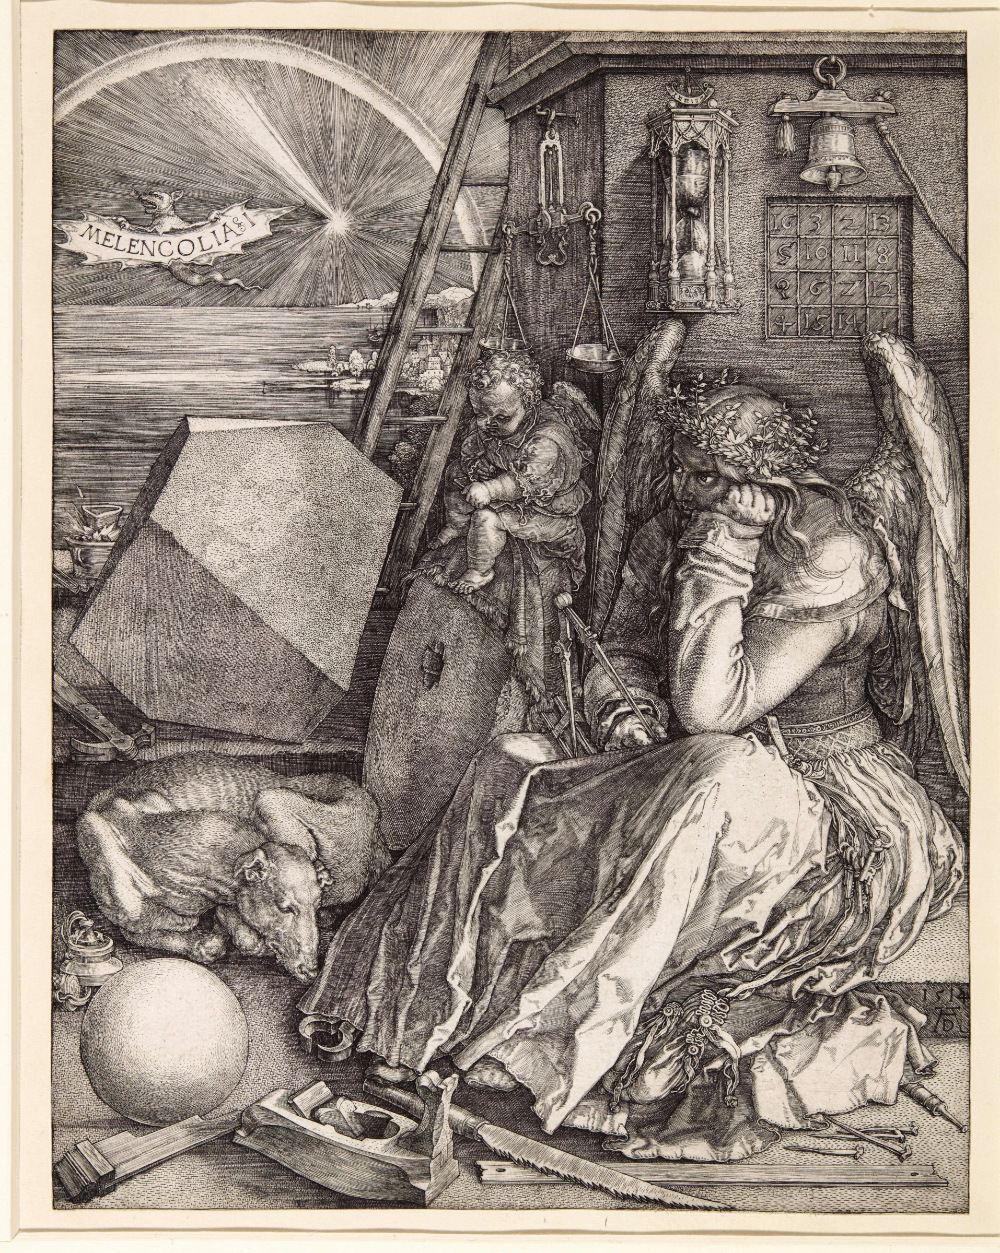 Melencolia I, Albrecht Dürer (1514)